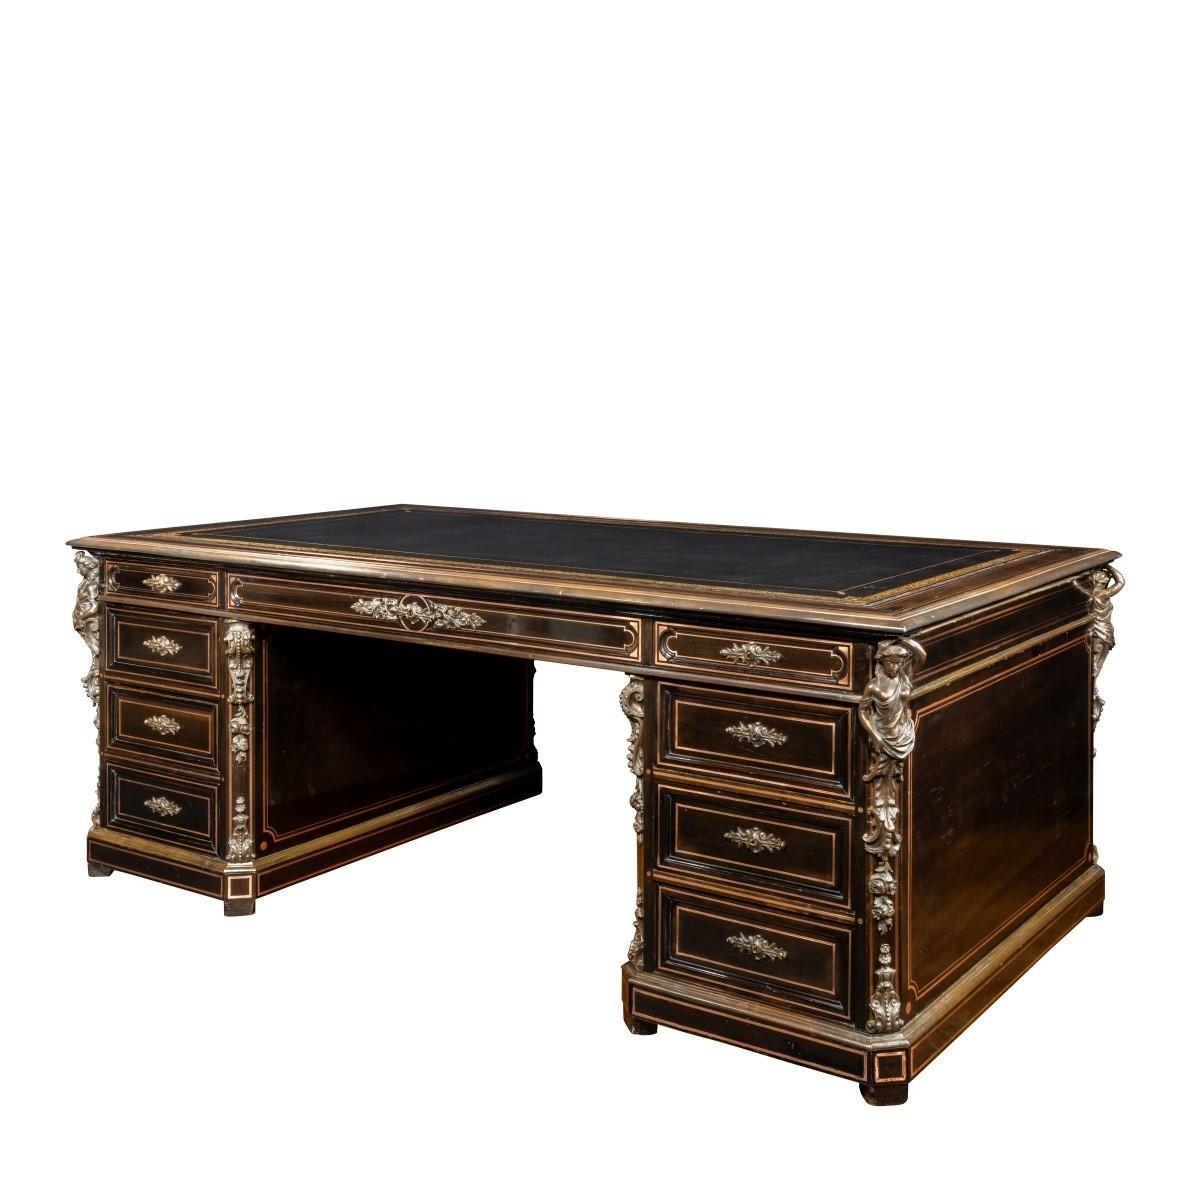 A large Napoleon III ebonized partners’ desk